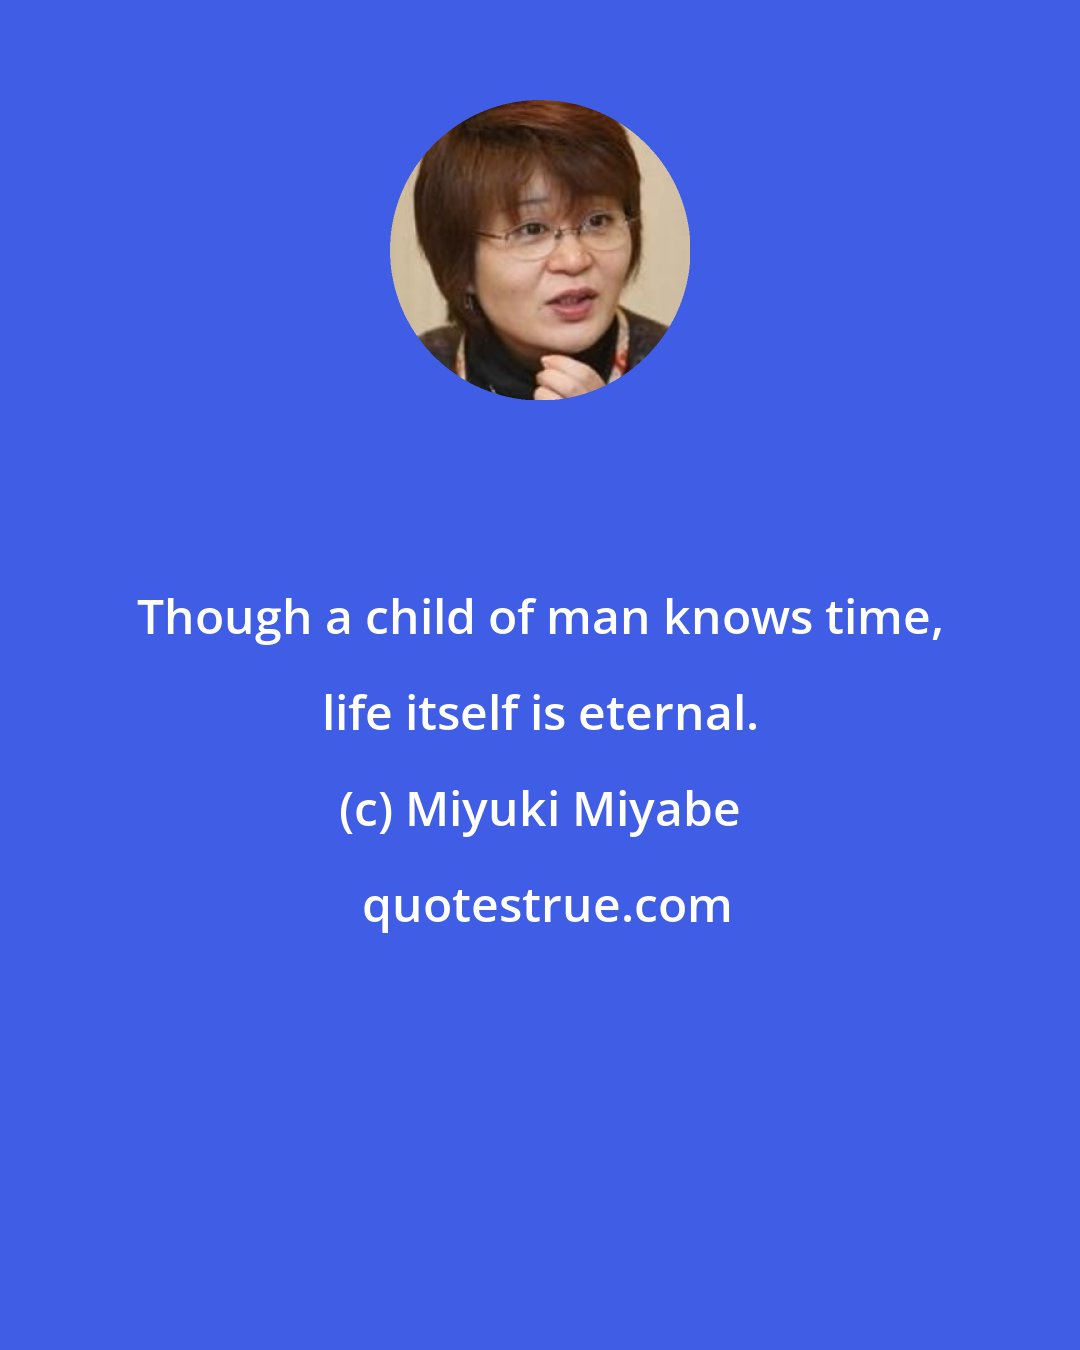 Miyuki Miyabe: Though a child of man knows time, life itself is eternal.